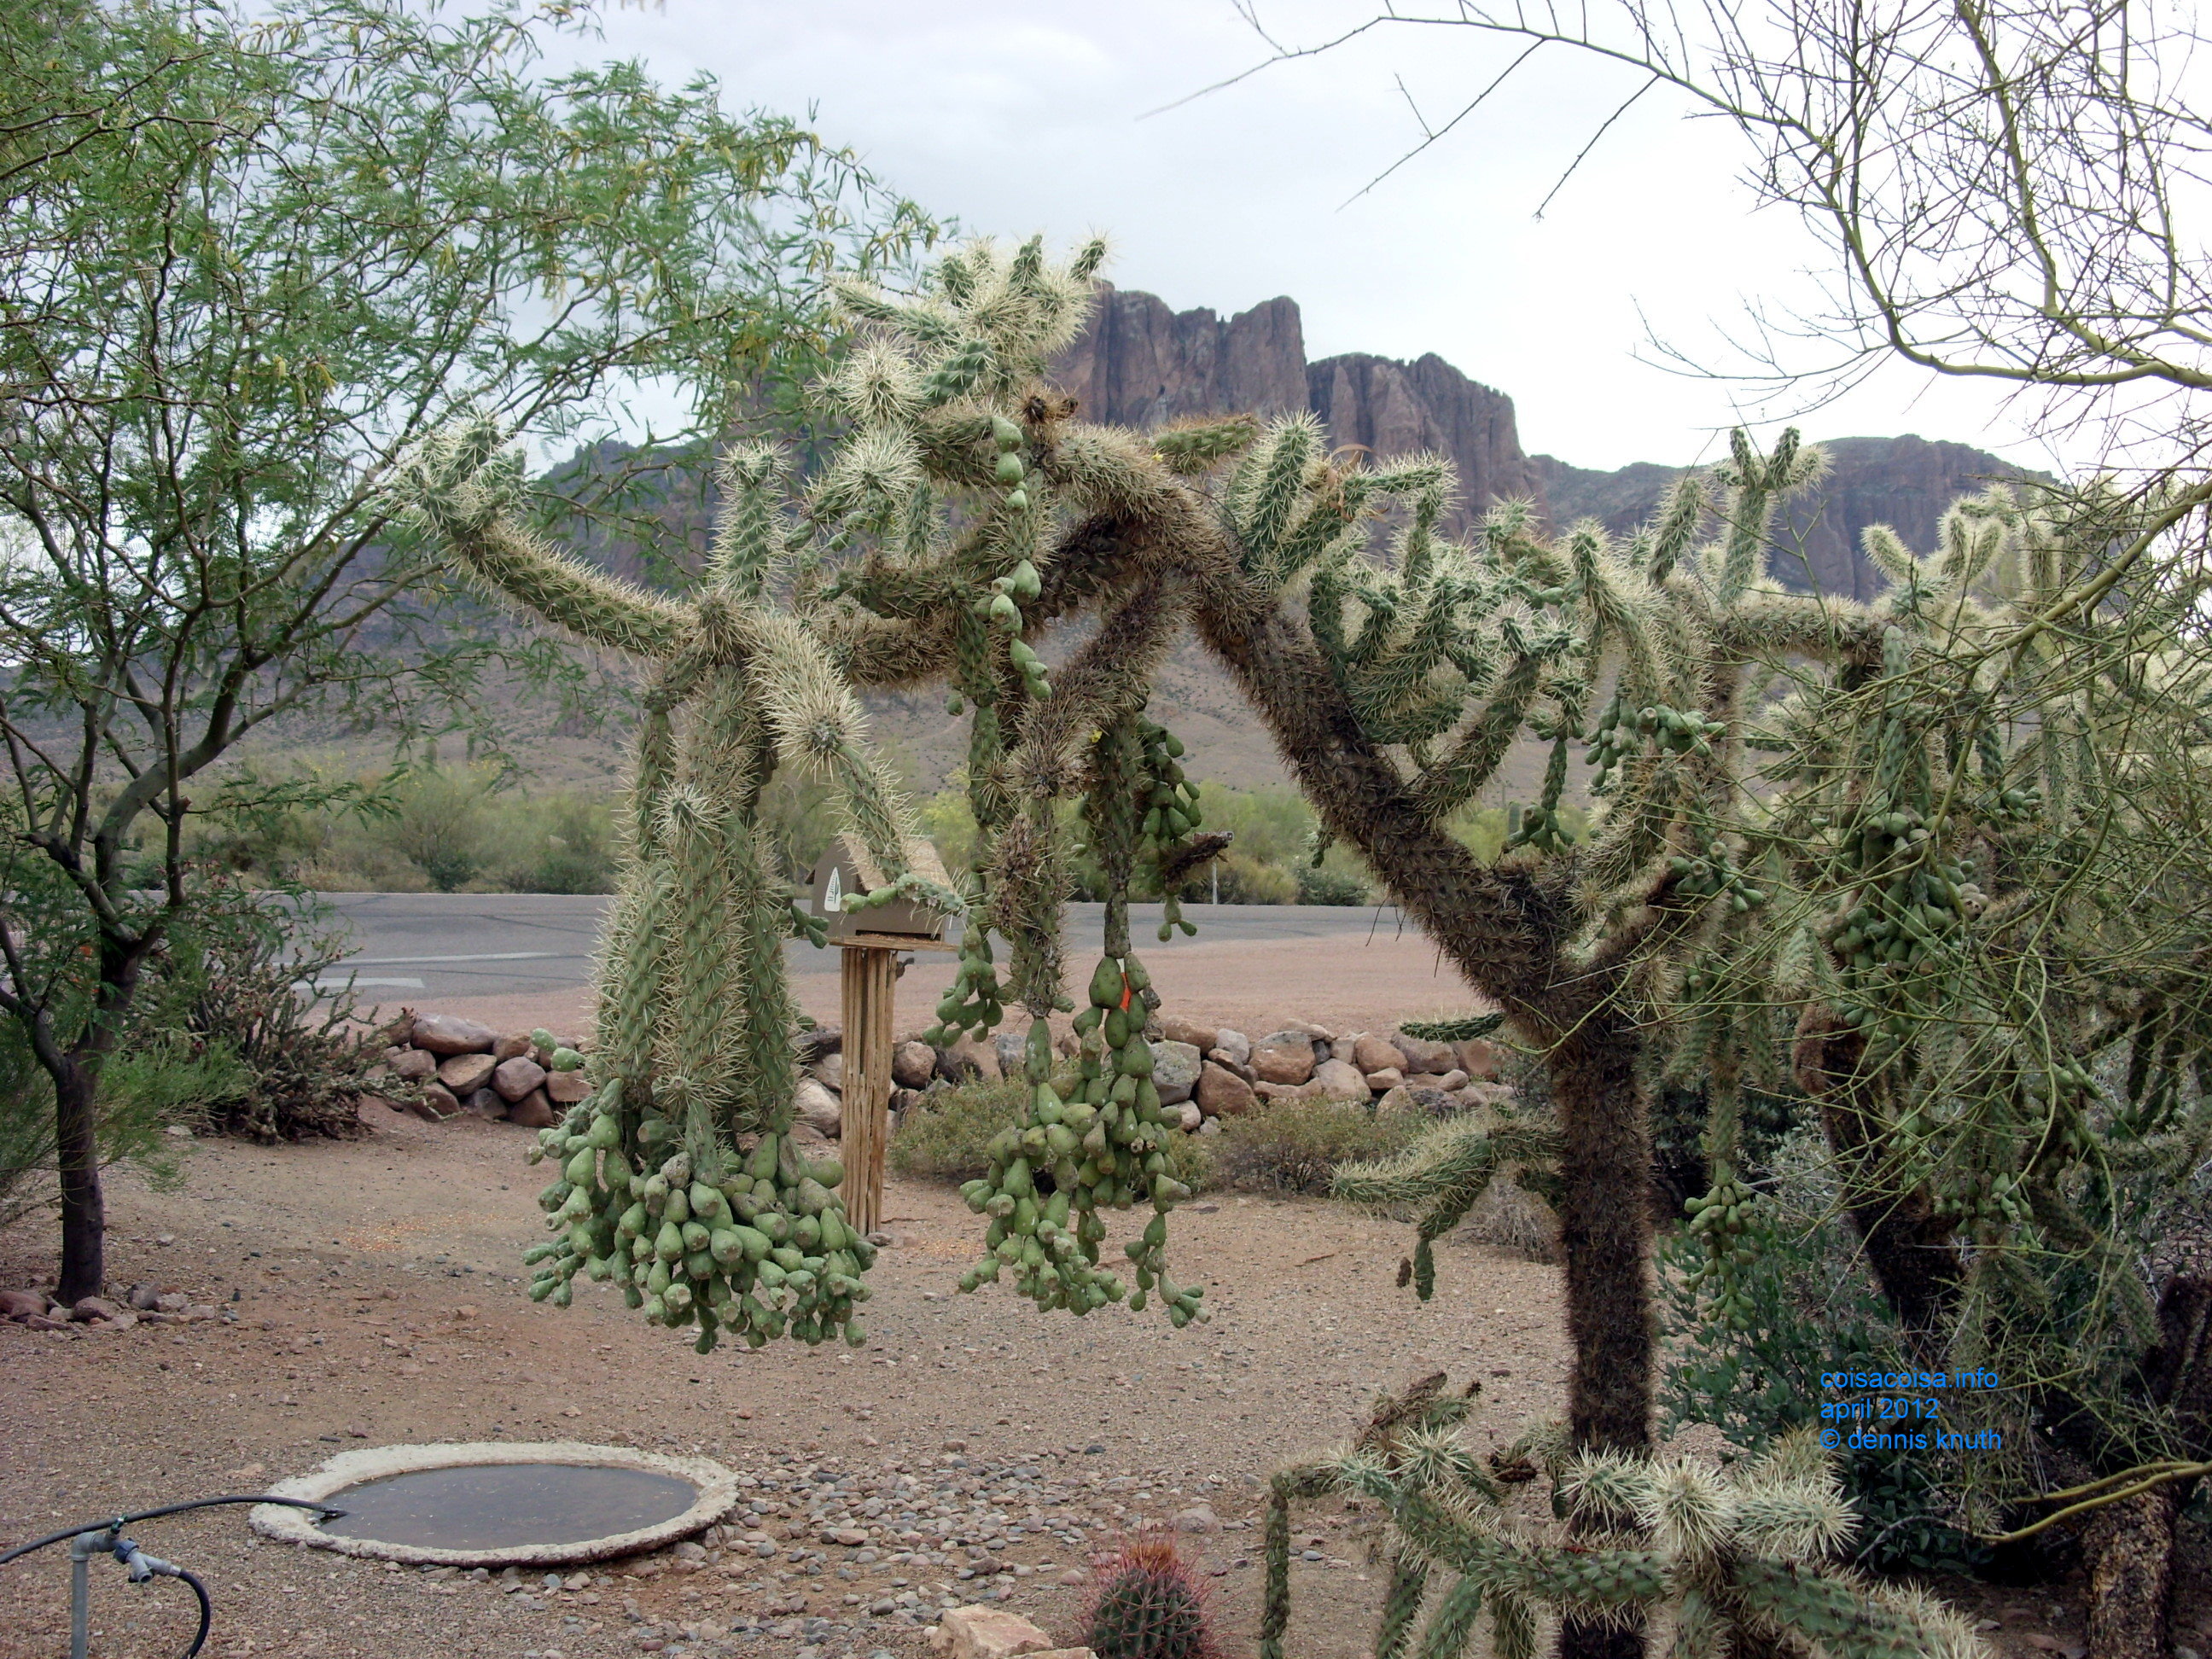 Desert plants at Apache Junction